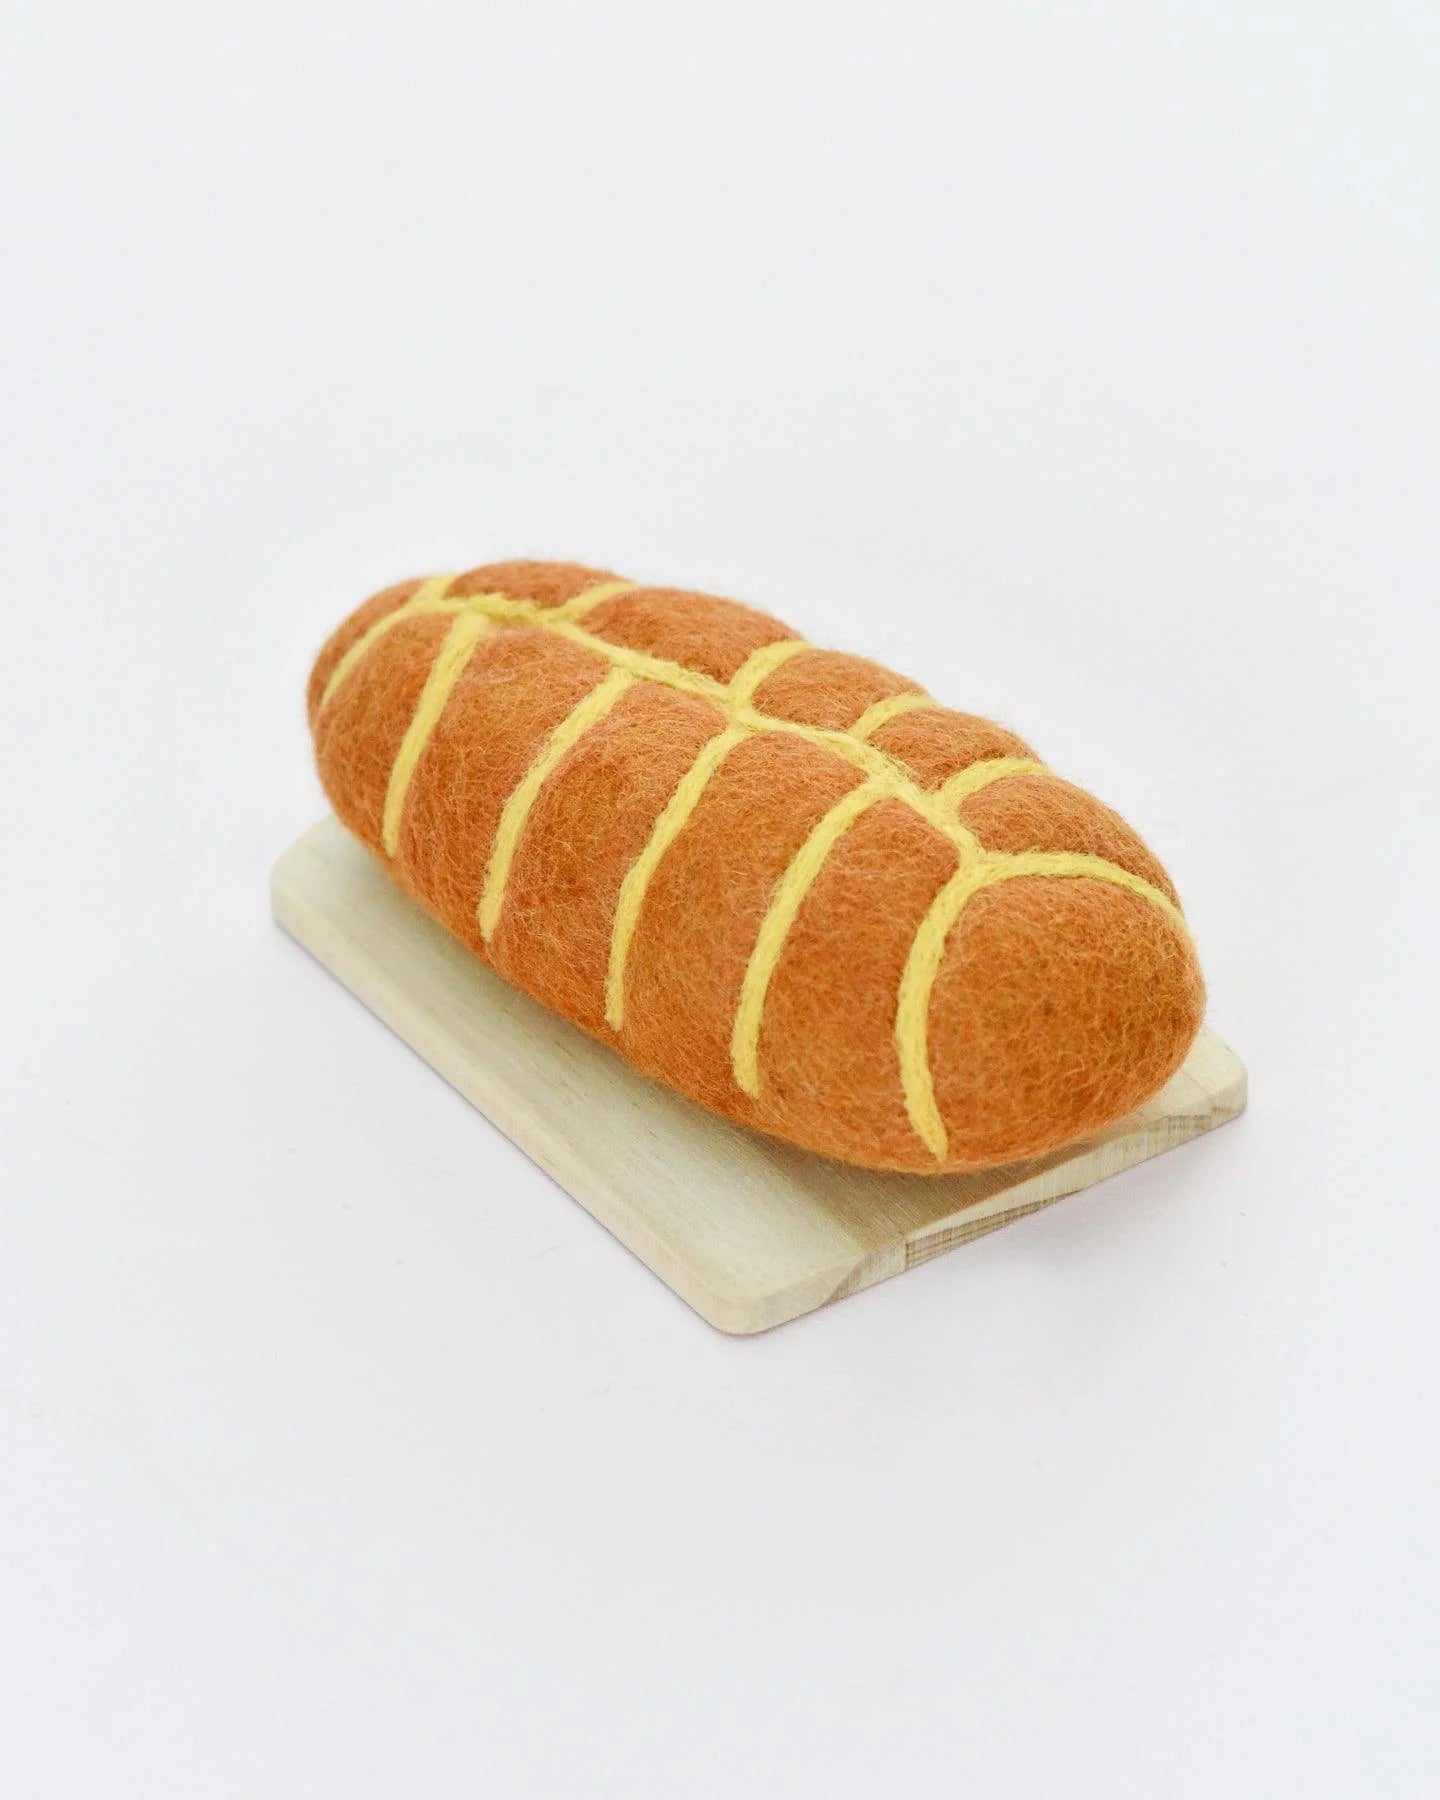 Felt Braided bread loaf